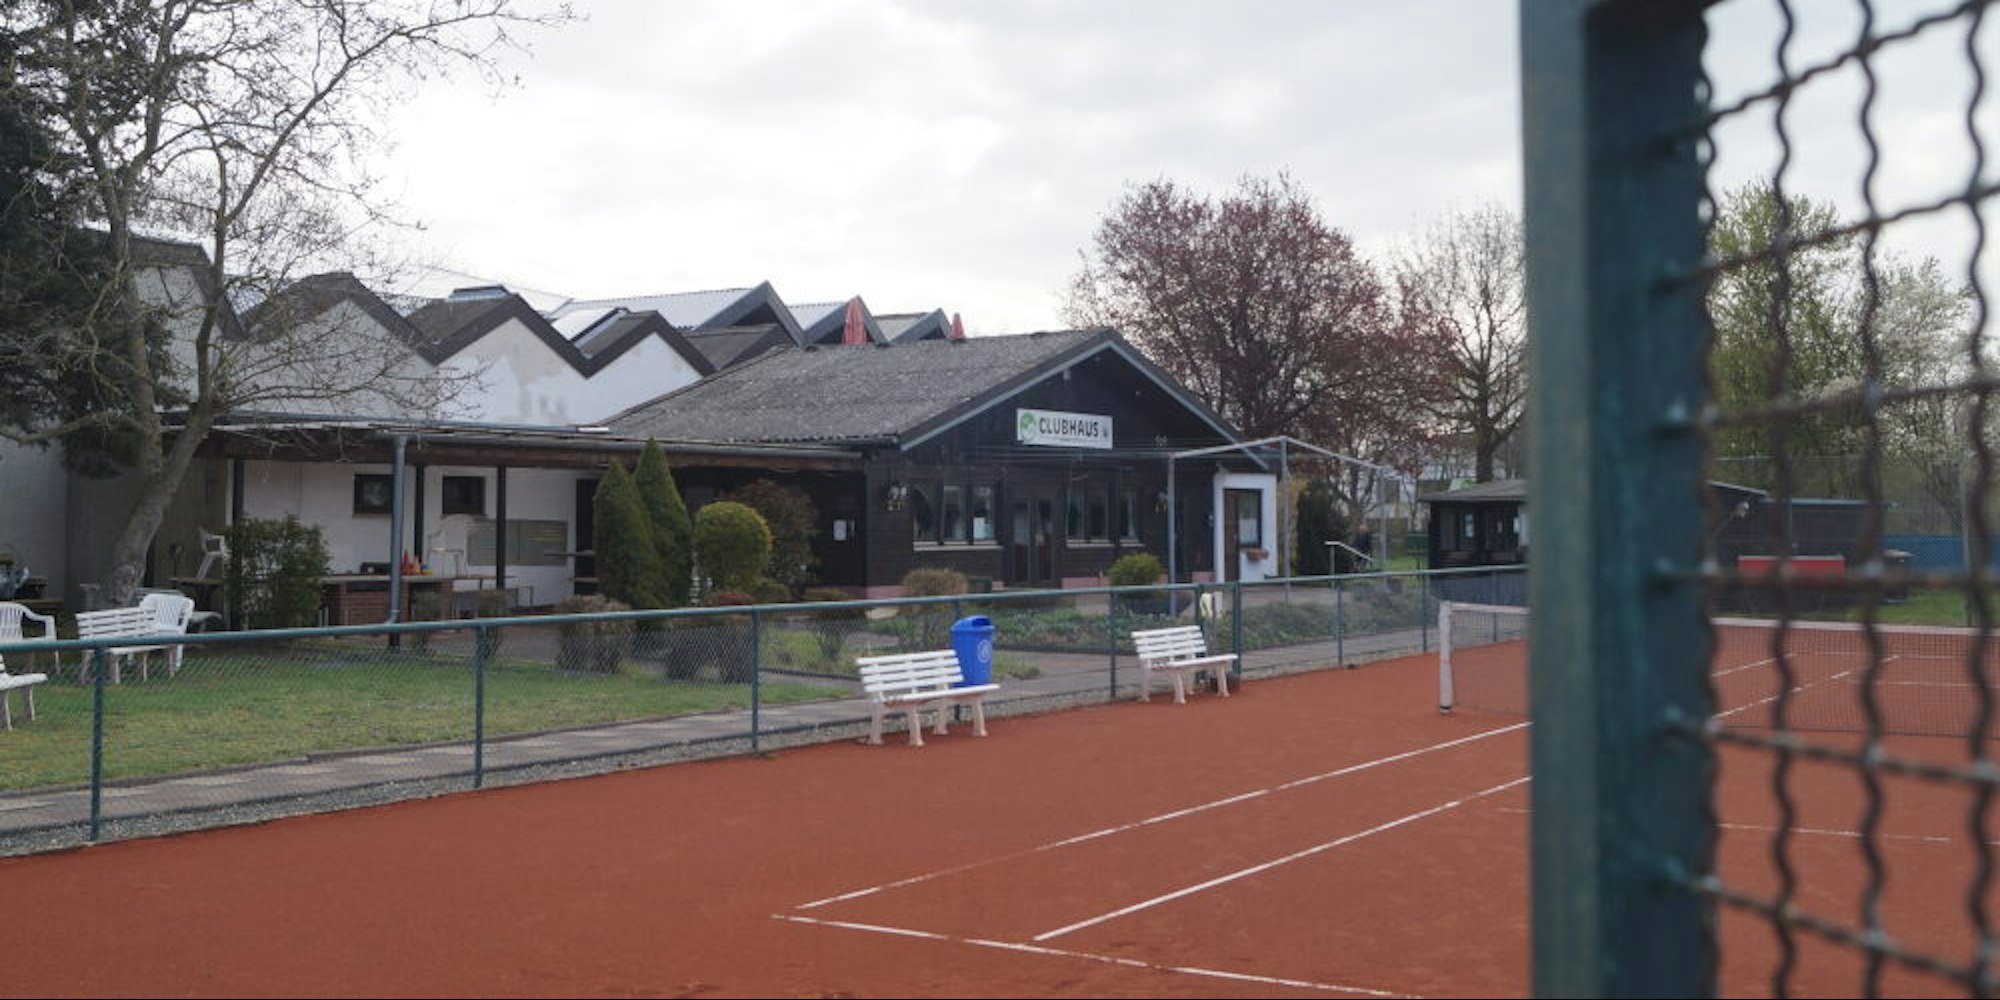 Gleich hinter dem Clubhaus des TC Kerpen liegt die kommerziell betriebene Tennishalle, die sogenannte Racket-Arena. Jetzt soll das Clubhaus einer großen Terrasse weichen.